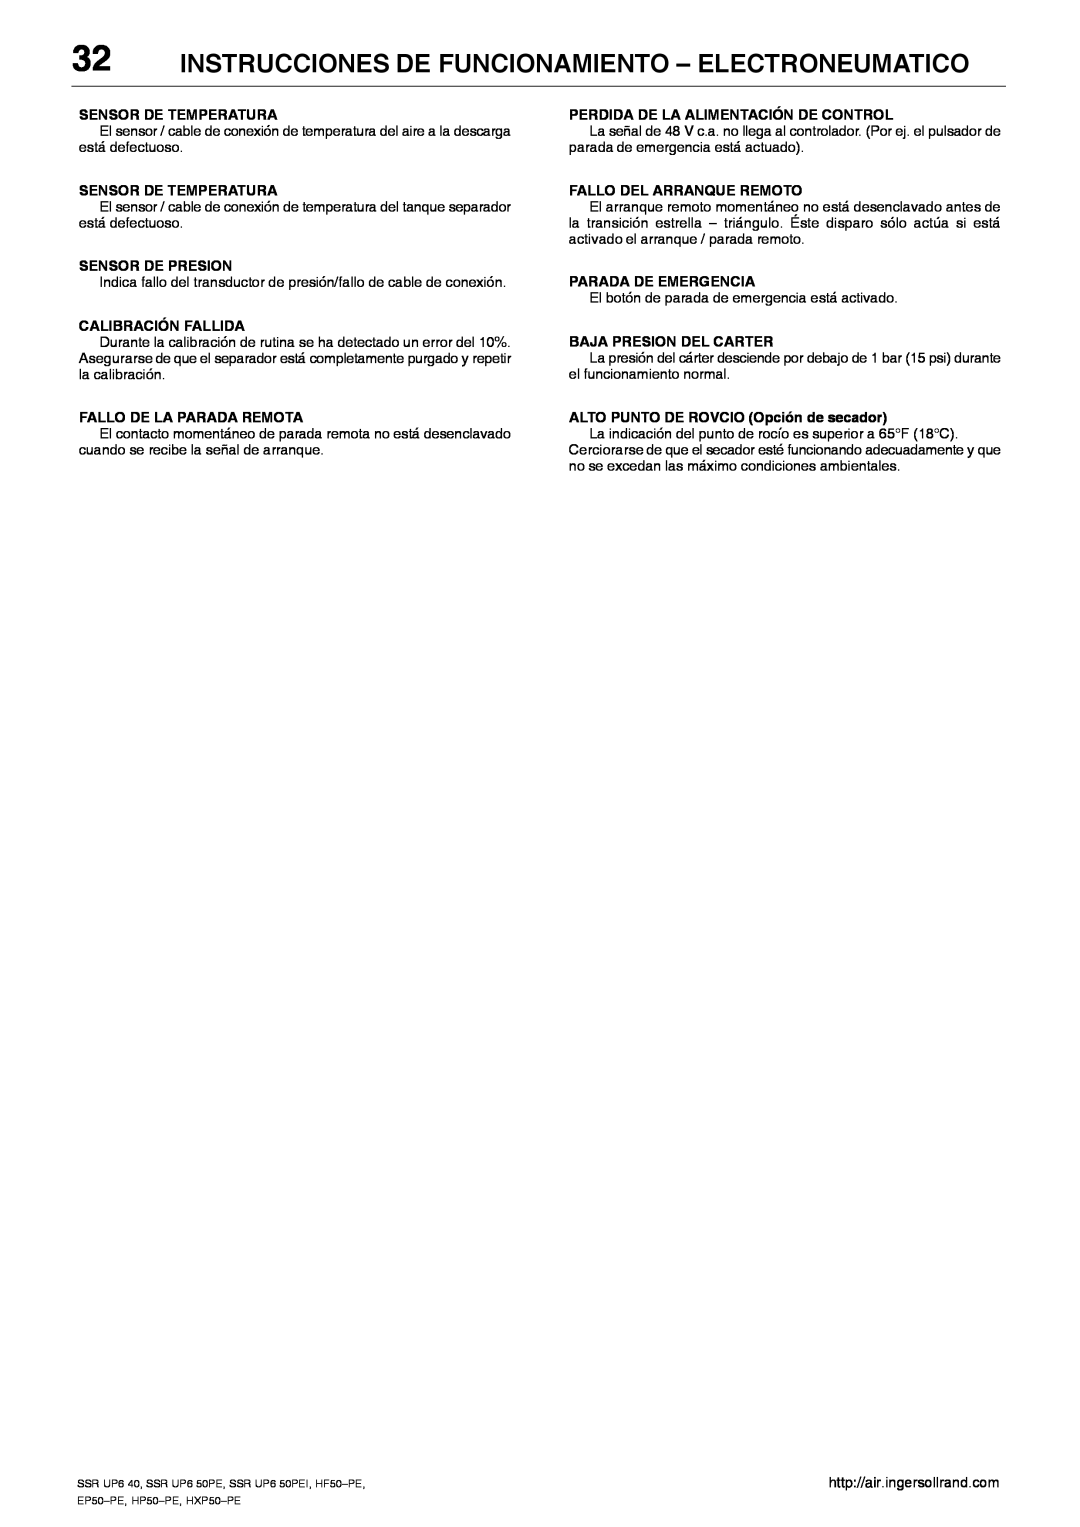 Ingersoll-Rand SSR UP6 40, SSR UP6 50PEI HF50-PE, EP50-PE, HXP50-PE Instrucciones De Funcionamiento - Electroneumatico 